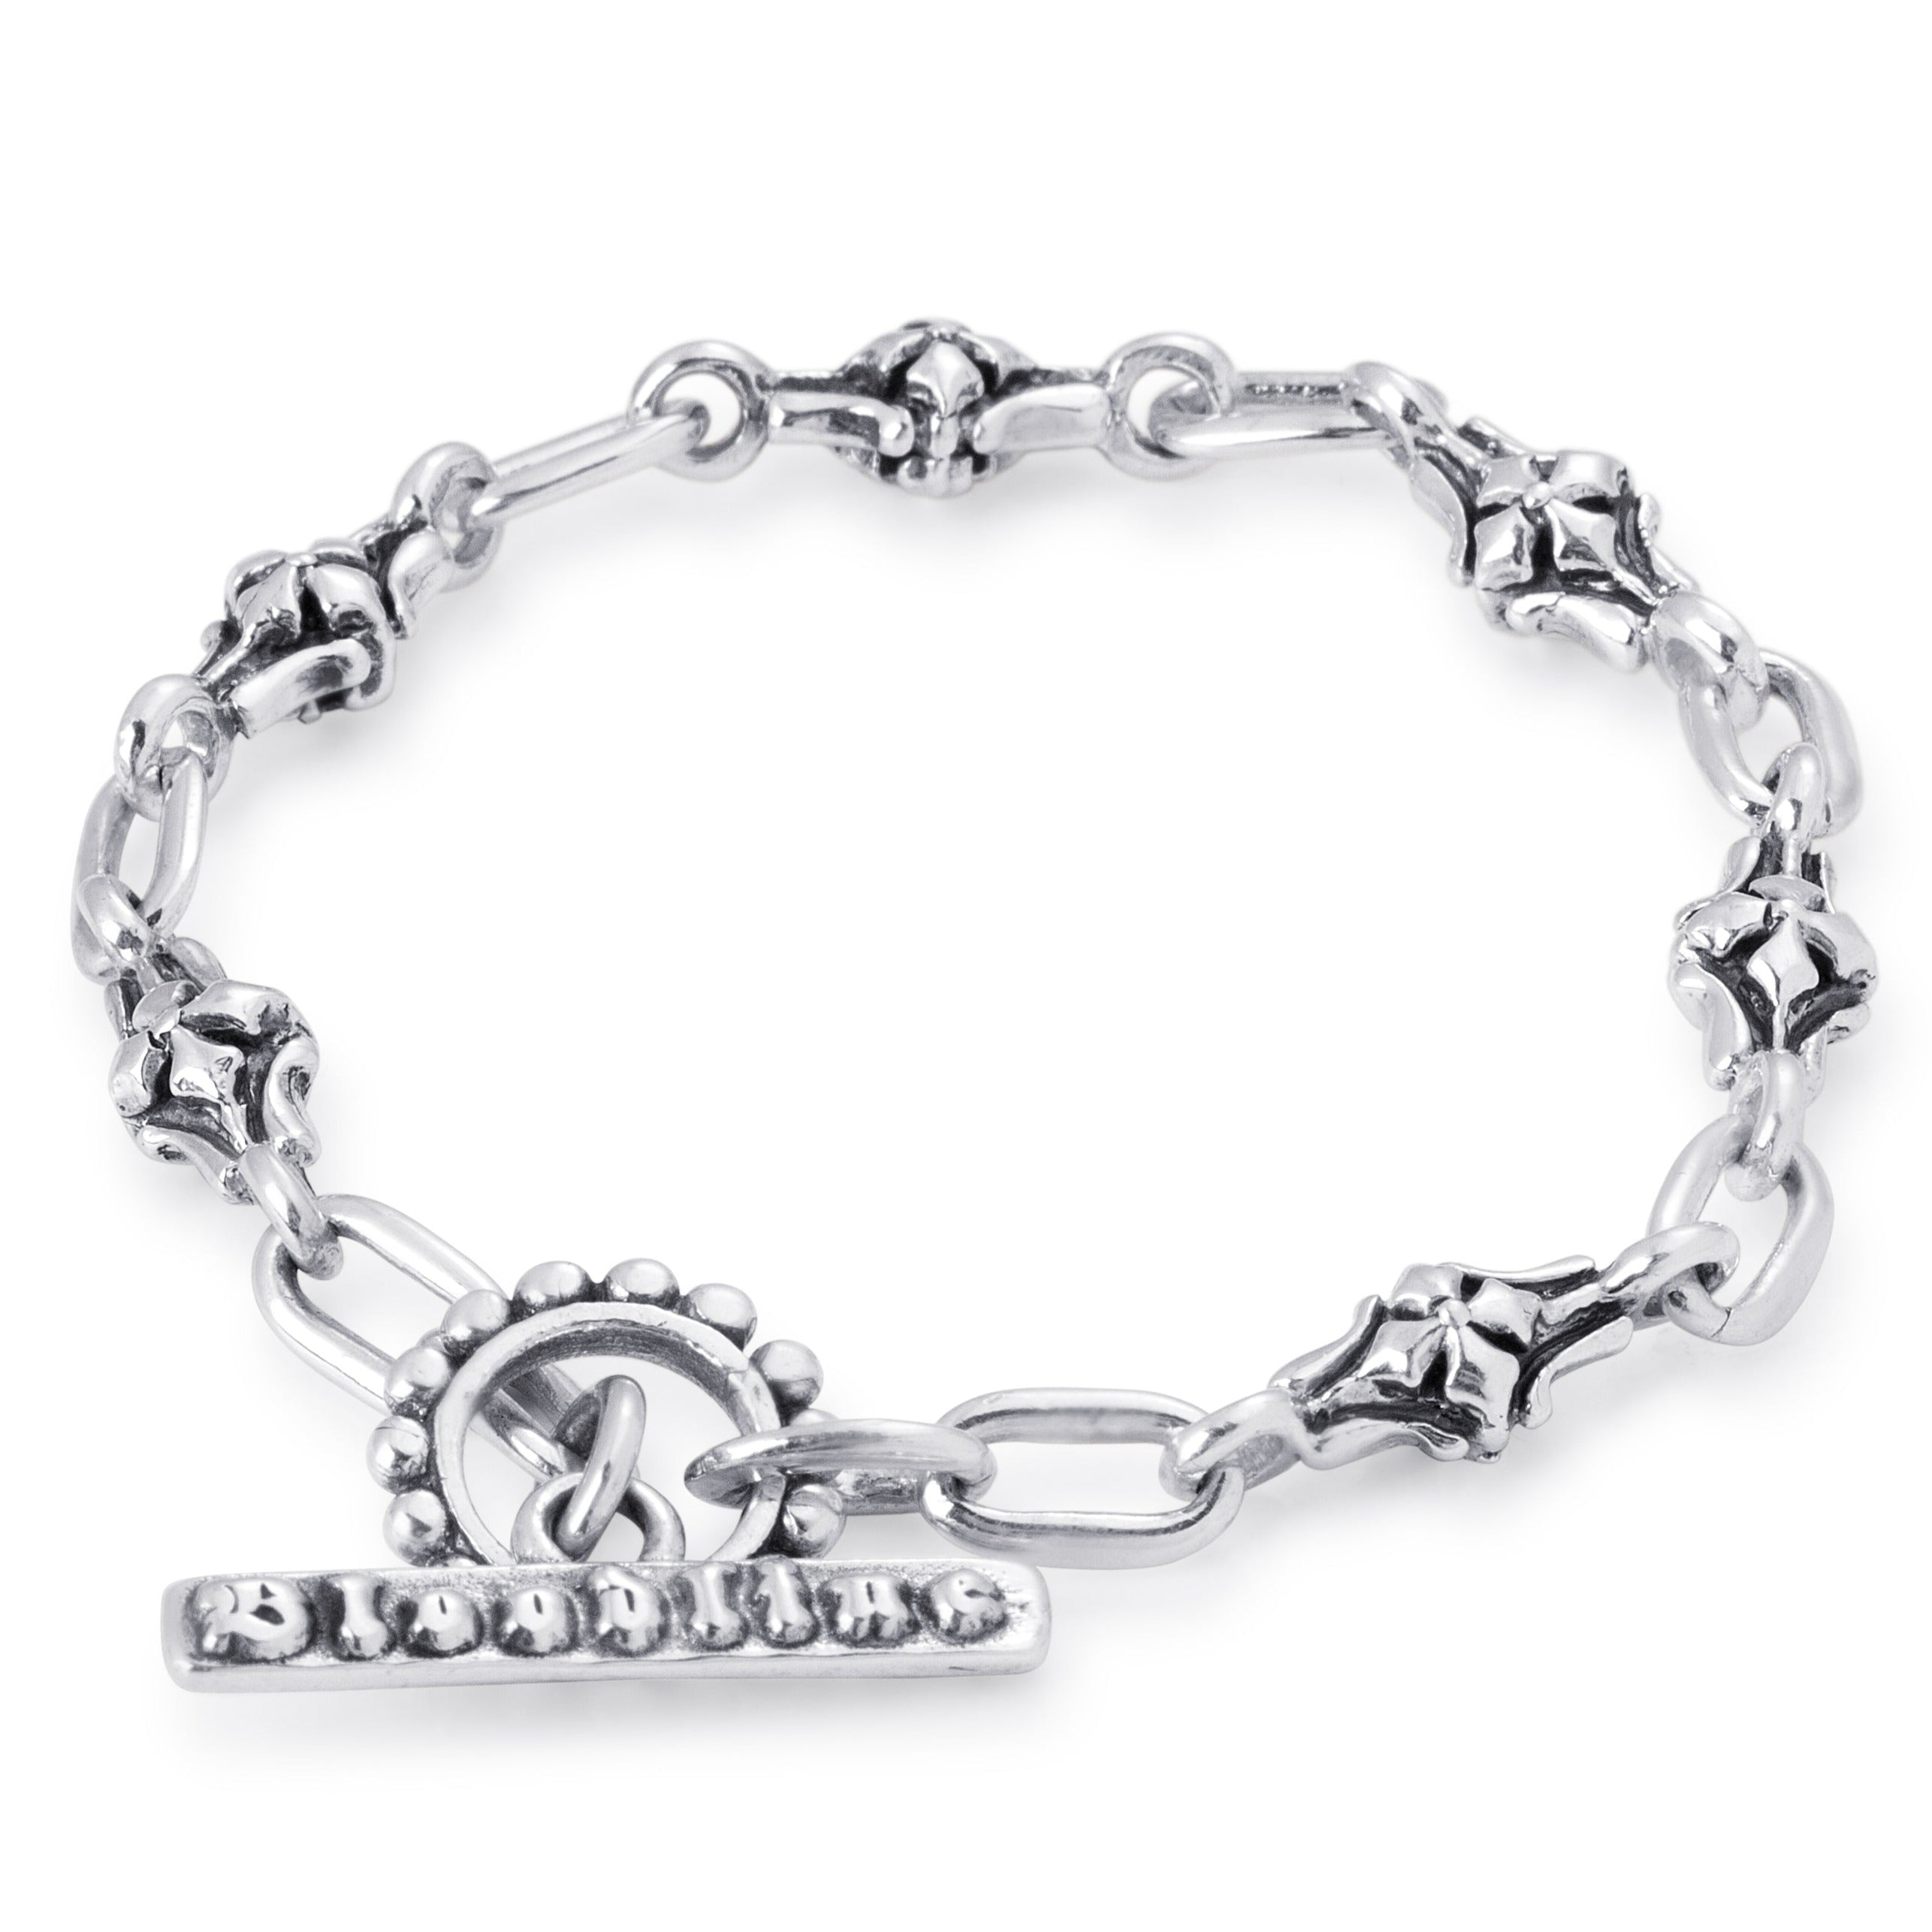 Barcelona Chain Link Bracelet in Sterling Silver, 6mm